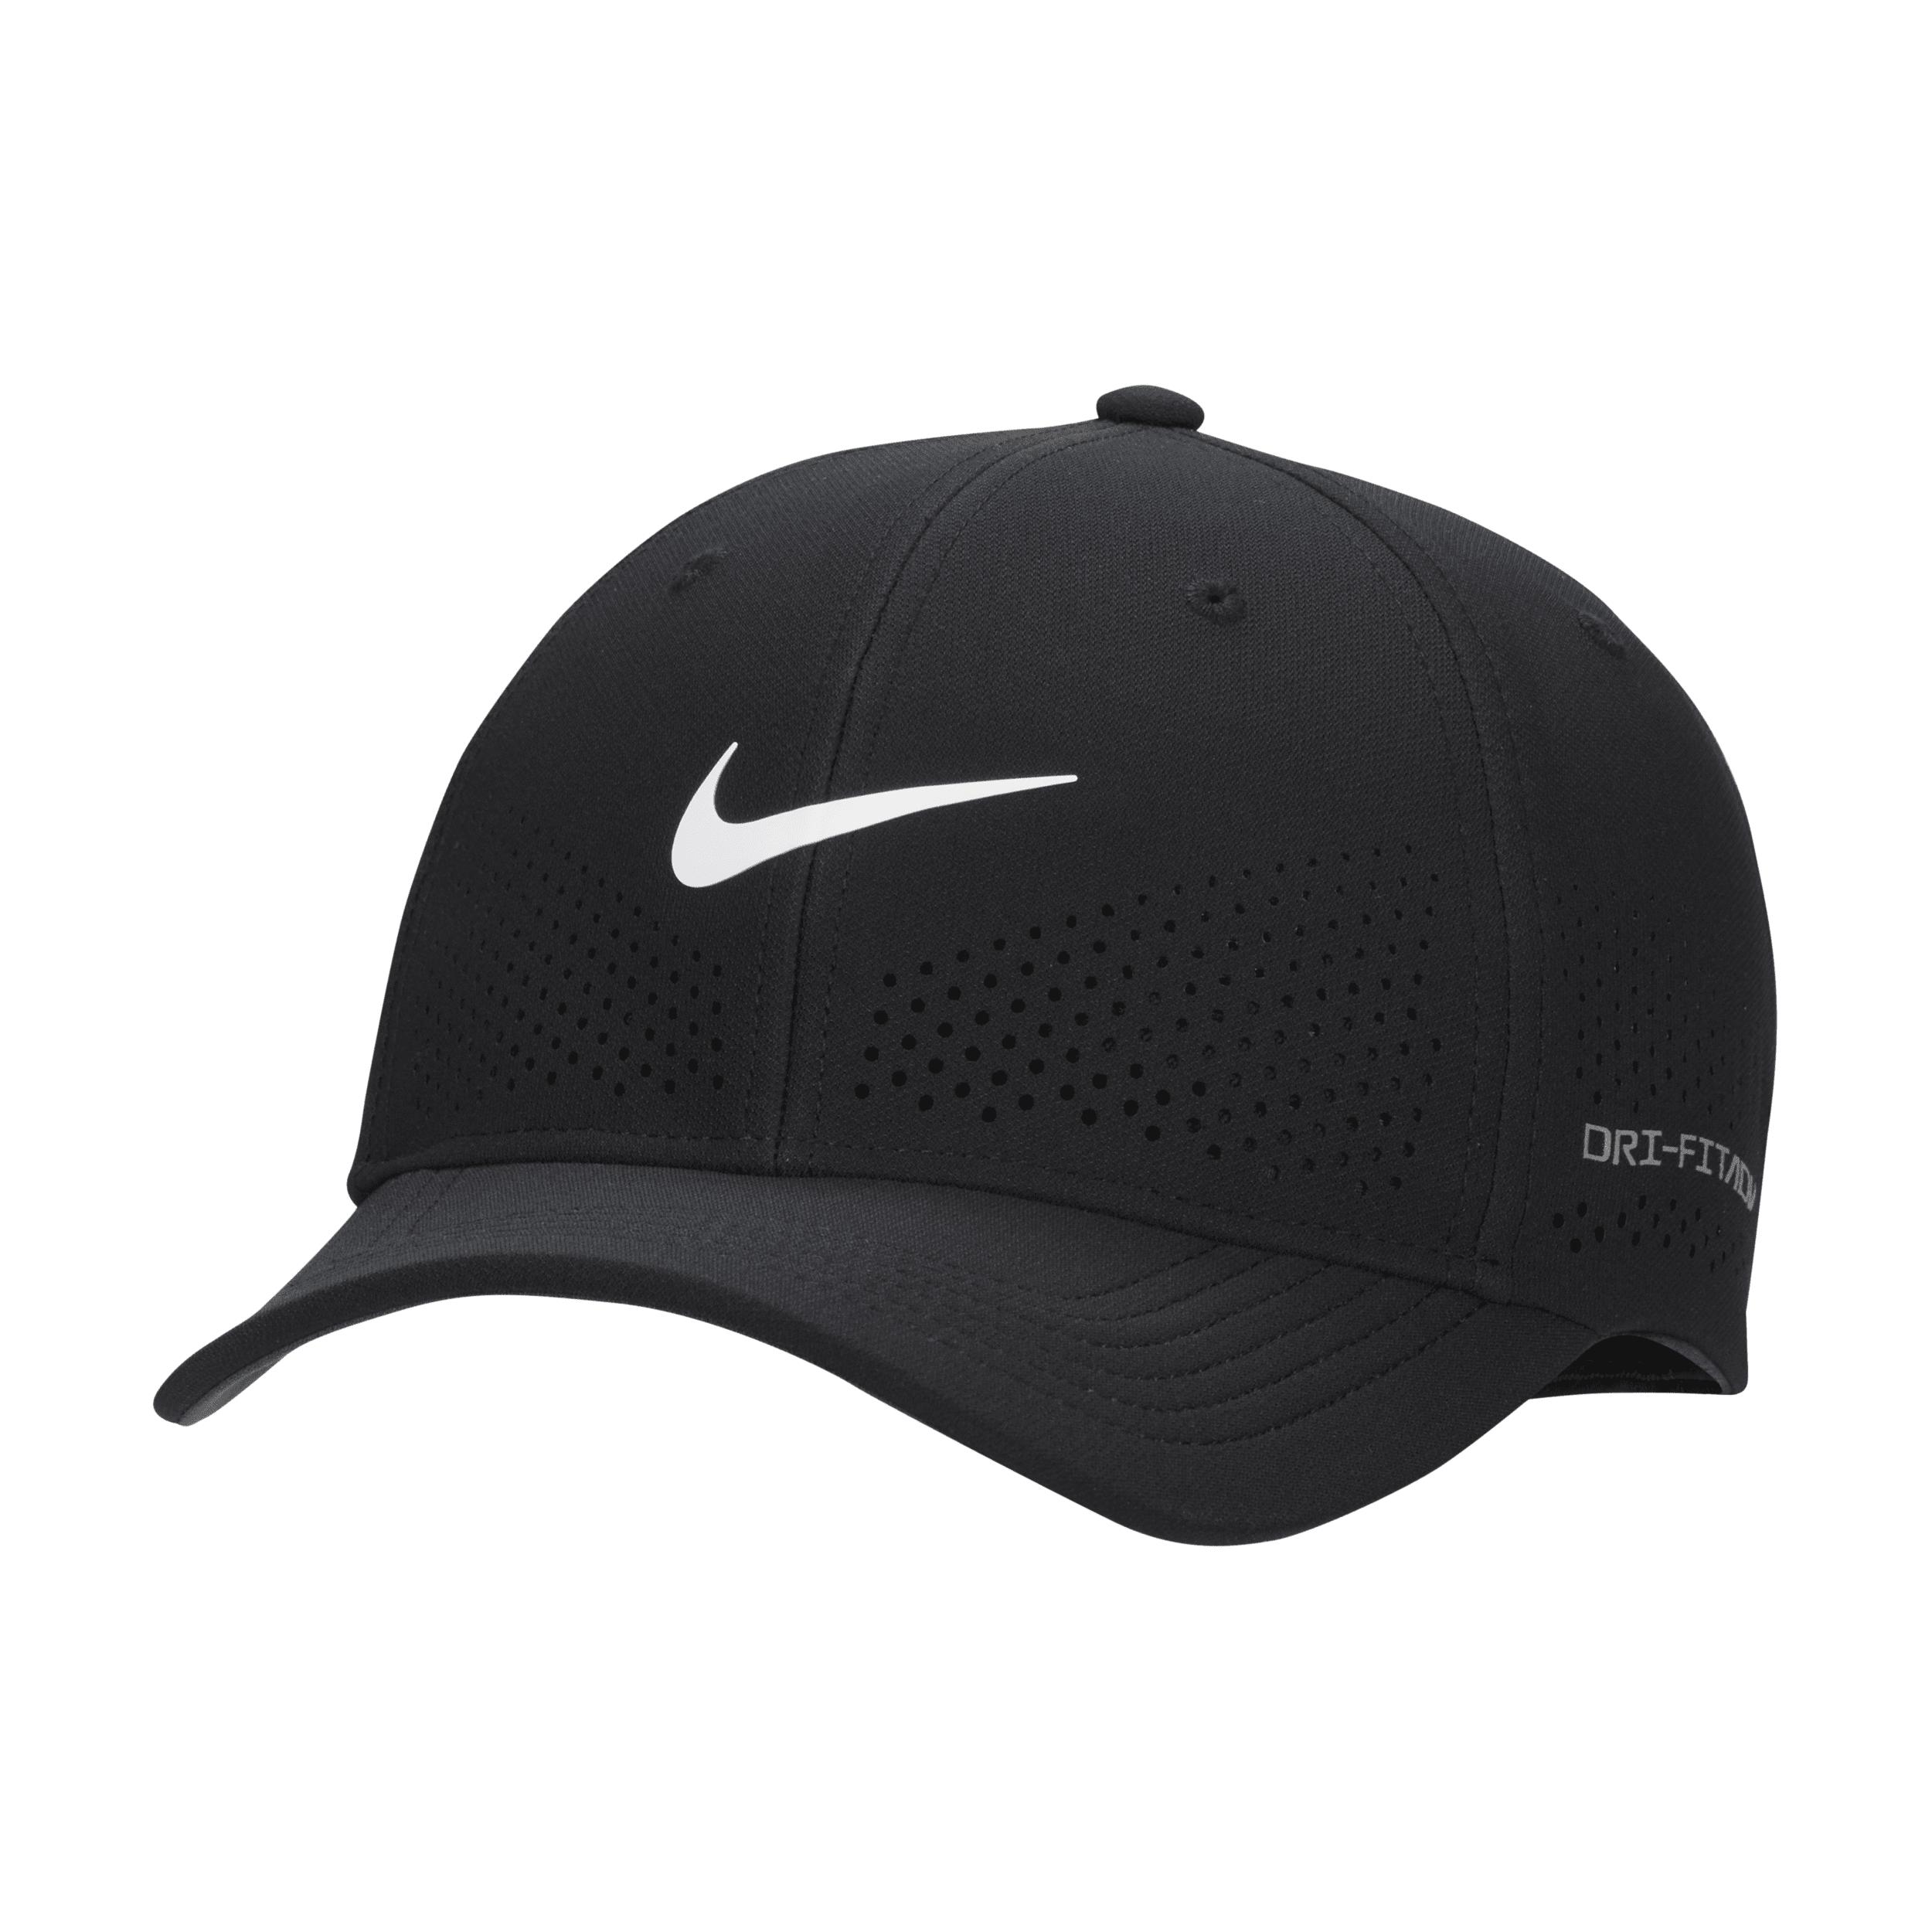 Nike Dri-fit Adv Rise Structured Swooshflex Cap in Black | Lyst